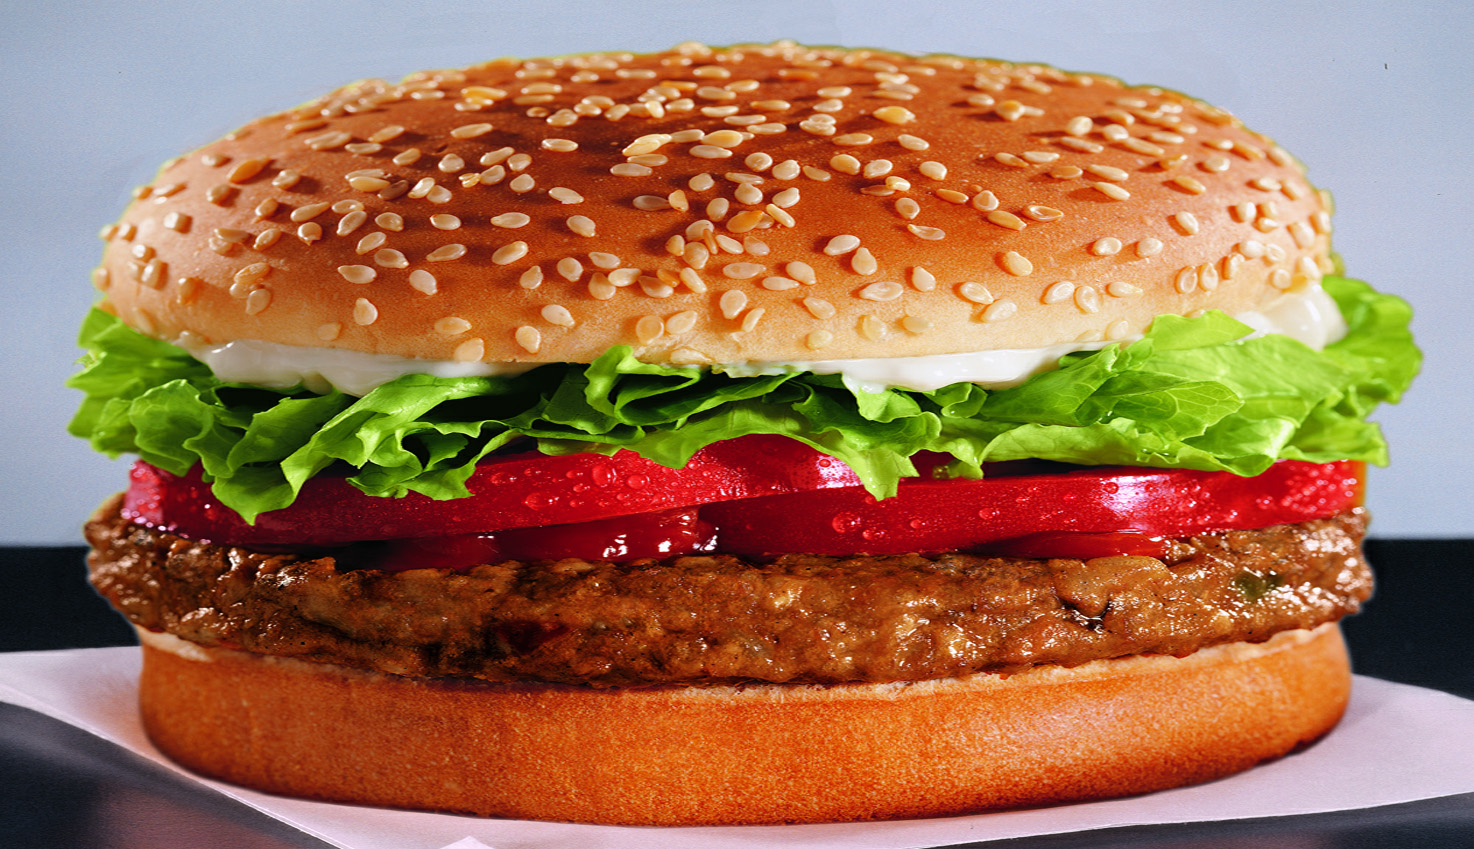 Burger Wallpaper Images  Free Download on Freepik